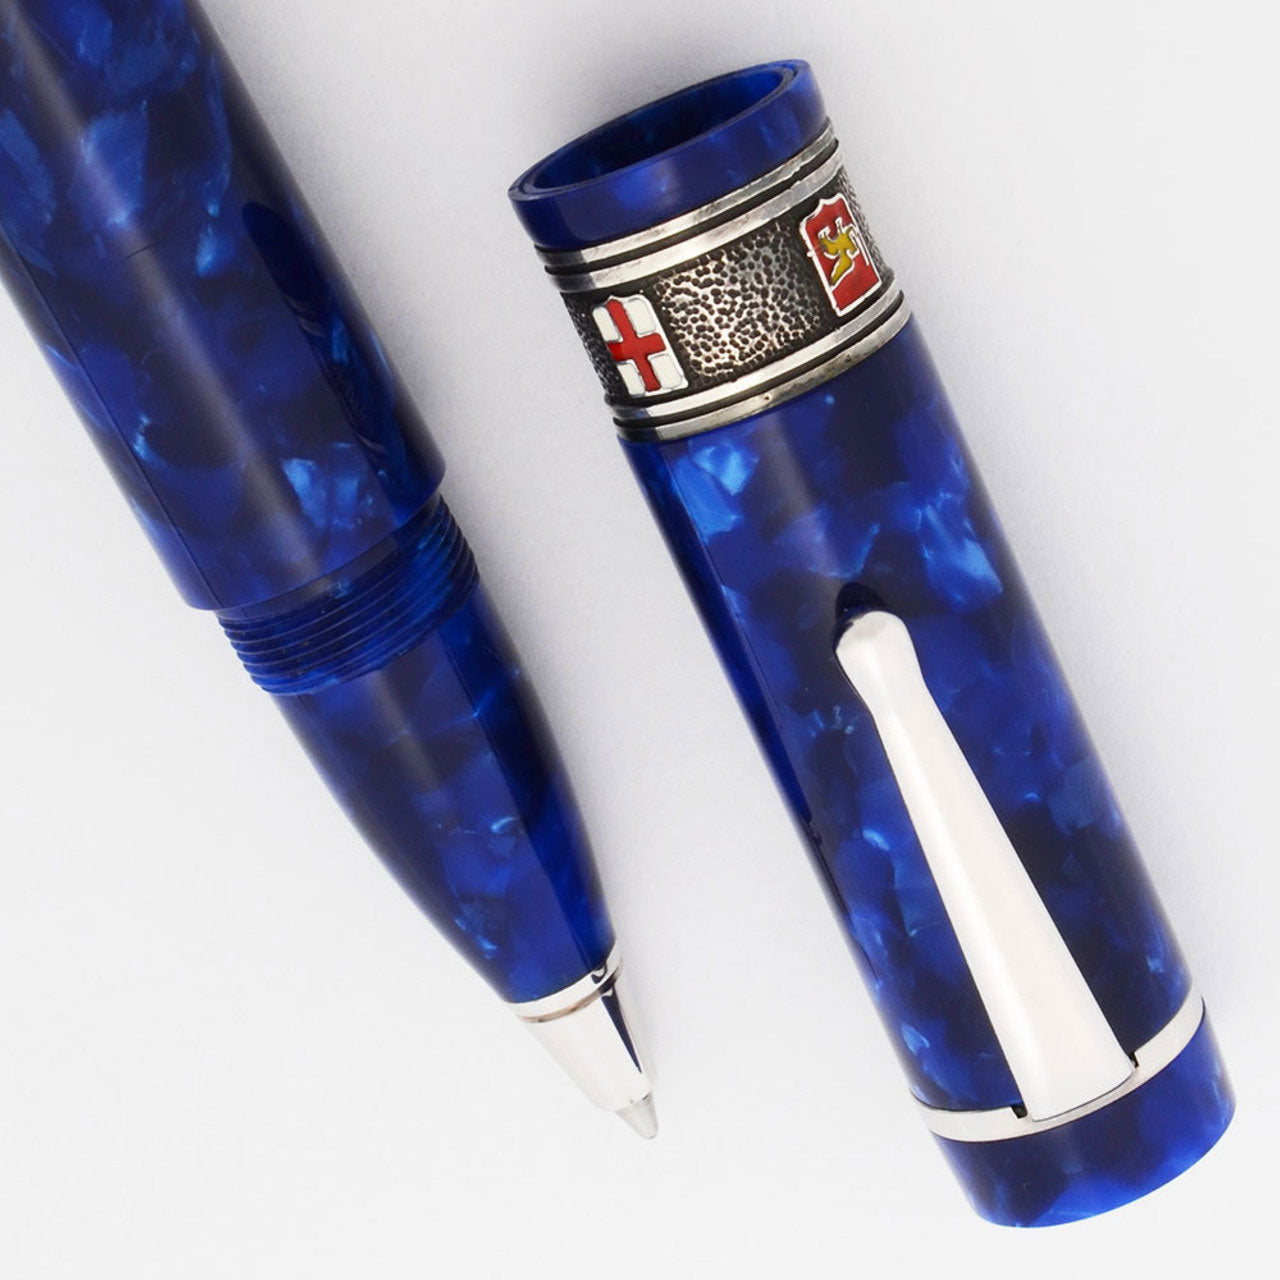 Delta Pens Limited Edition Repubbliche Marinare Rollerball Pen